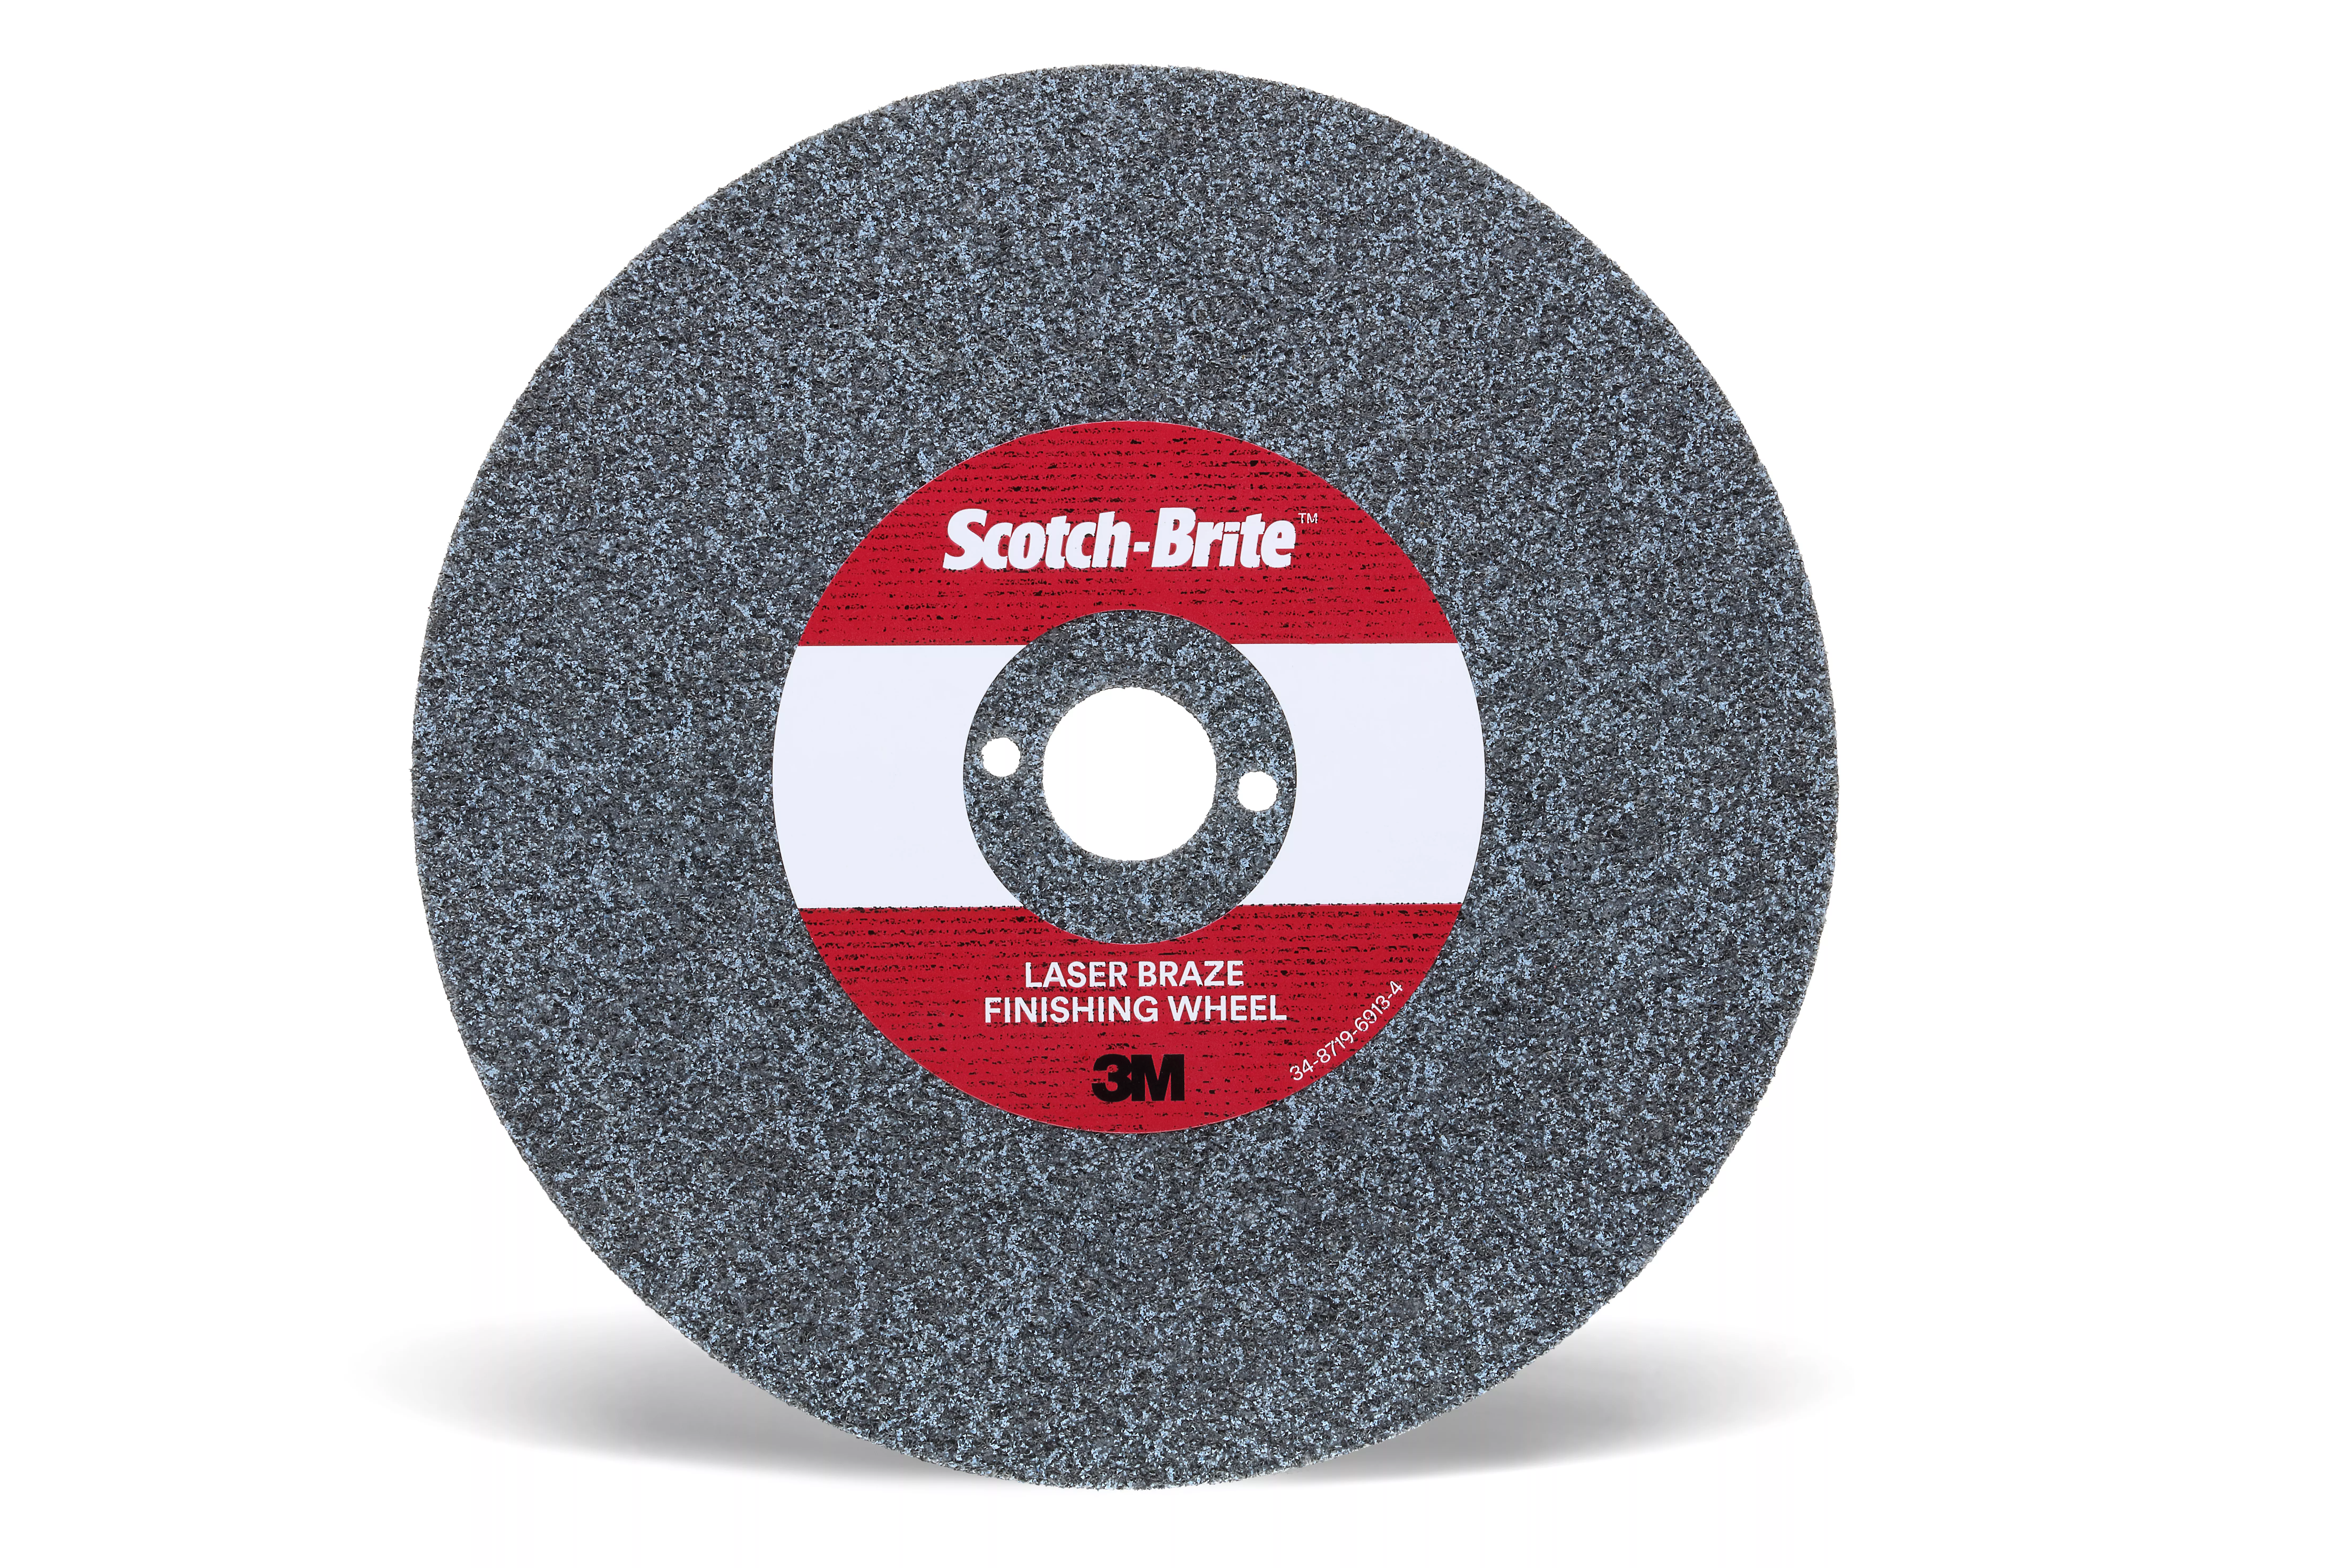 Scotch-Brite™ Laser Braze Finishing Wheel, 9 in x 3.2mm x 1-1/4 in, 10
ea/Case